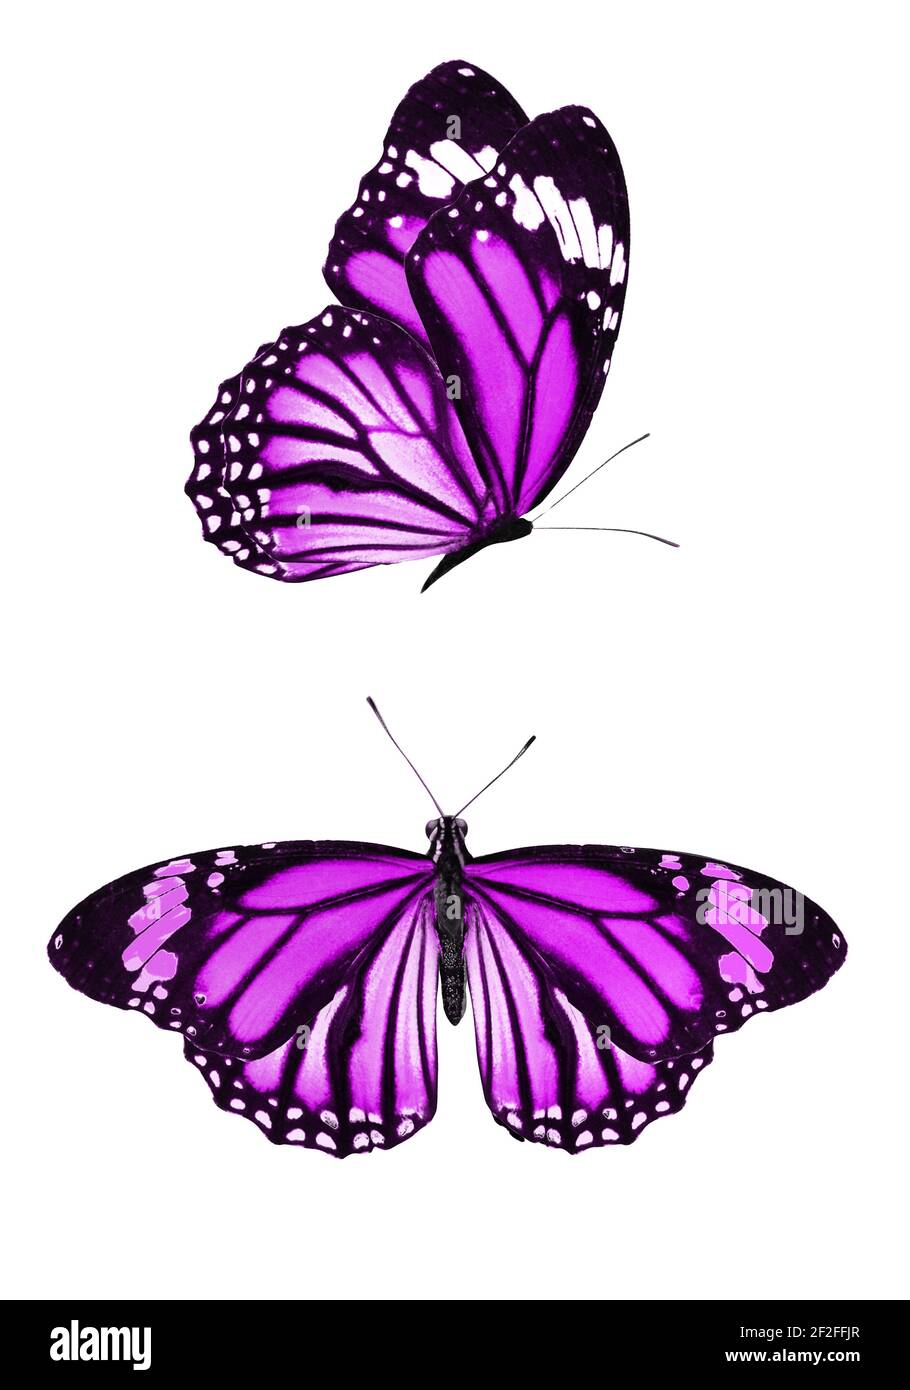 Bộ sưu tập bướm màu tím trên nền trắng sẽ khiến bạn ngất ngây. Hình ảnh sẽ mang đến những trải nghiệm tuyệt vời khi bạn được ngắm nhìn từng chi tiết về những chú bướm này và tìm hiểu thêm về sự phong phú và đa dạng của thế giới tự nhiên.